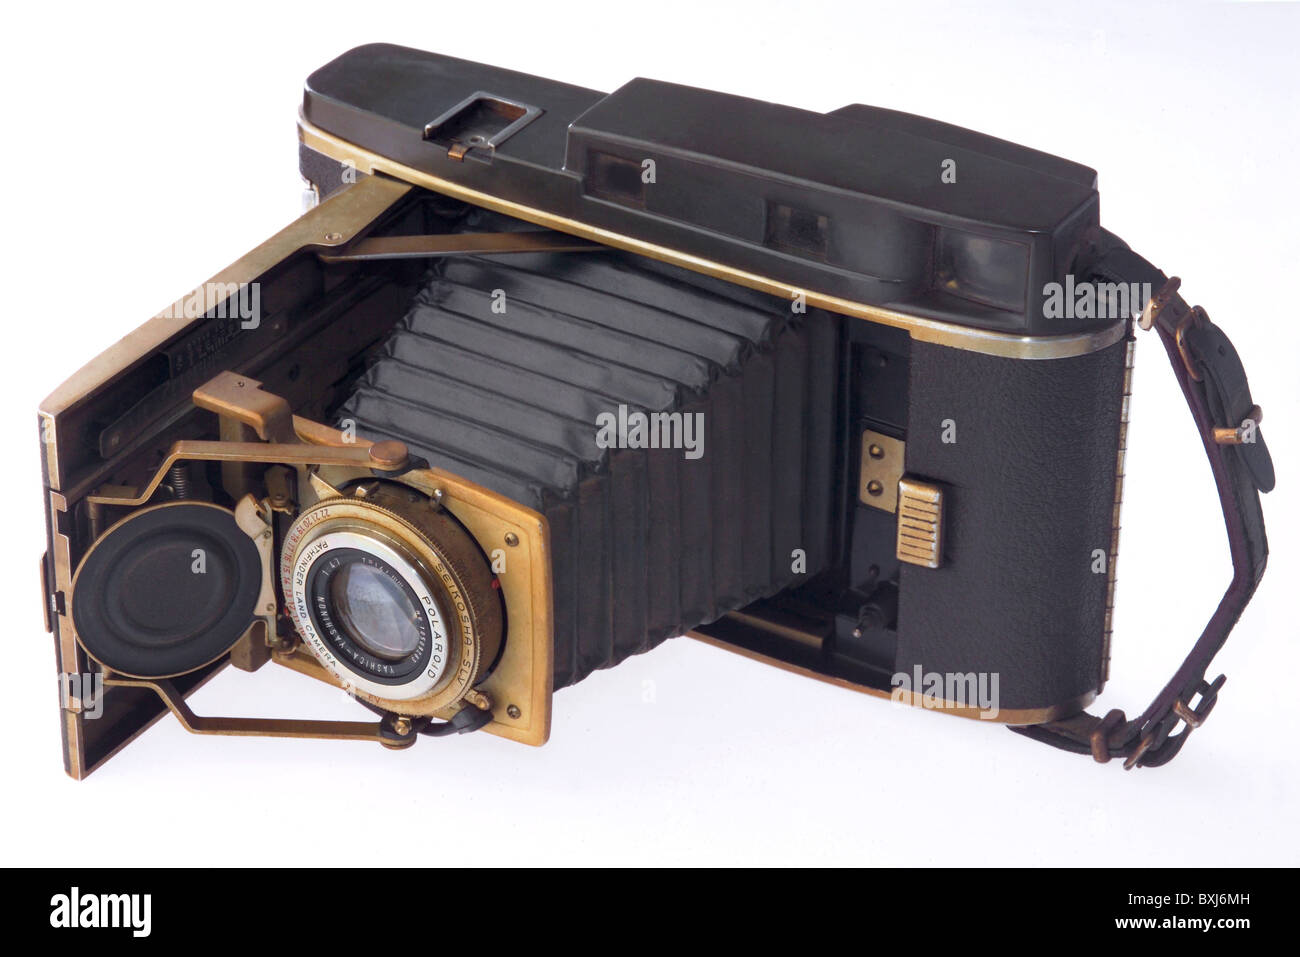 Photographie, appareils photo, appareil photo instantané Polaroid de début,  Polaroid 120, Japon, 1961, années 60, 20e siècle, historique, historique,  américain, Polaroid Pathfinder Land Camera, fabriqué par Yashica au Japon,  appareil photo à